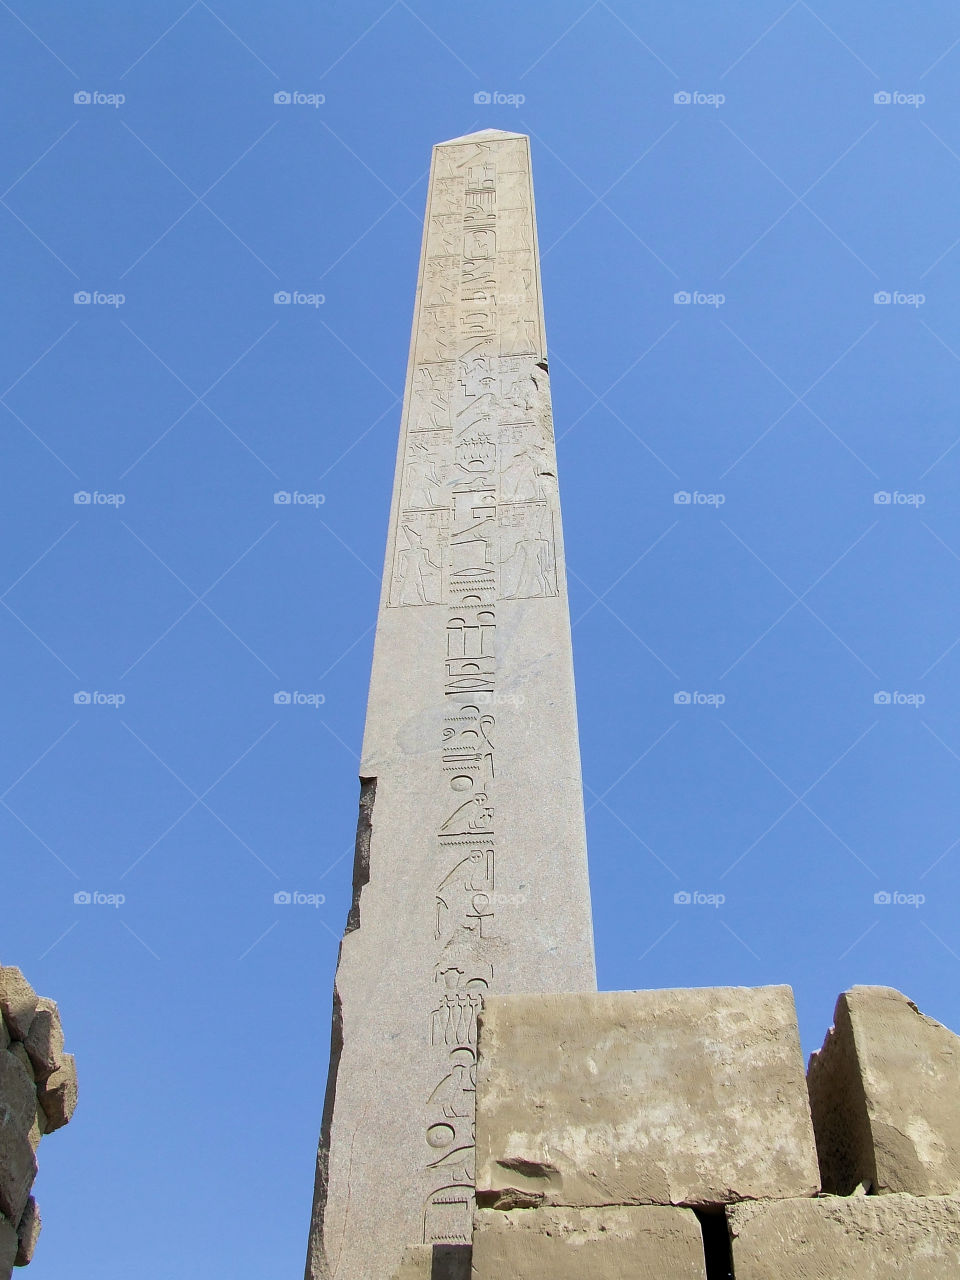 obelisk in Luxor temples Egypt